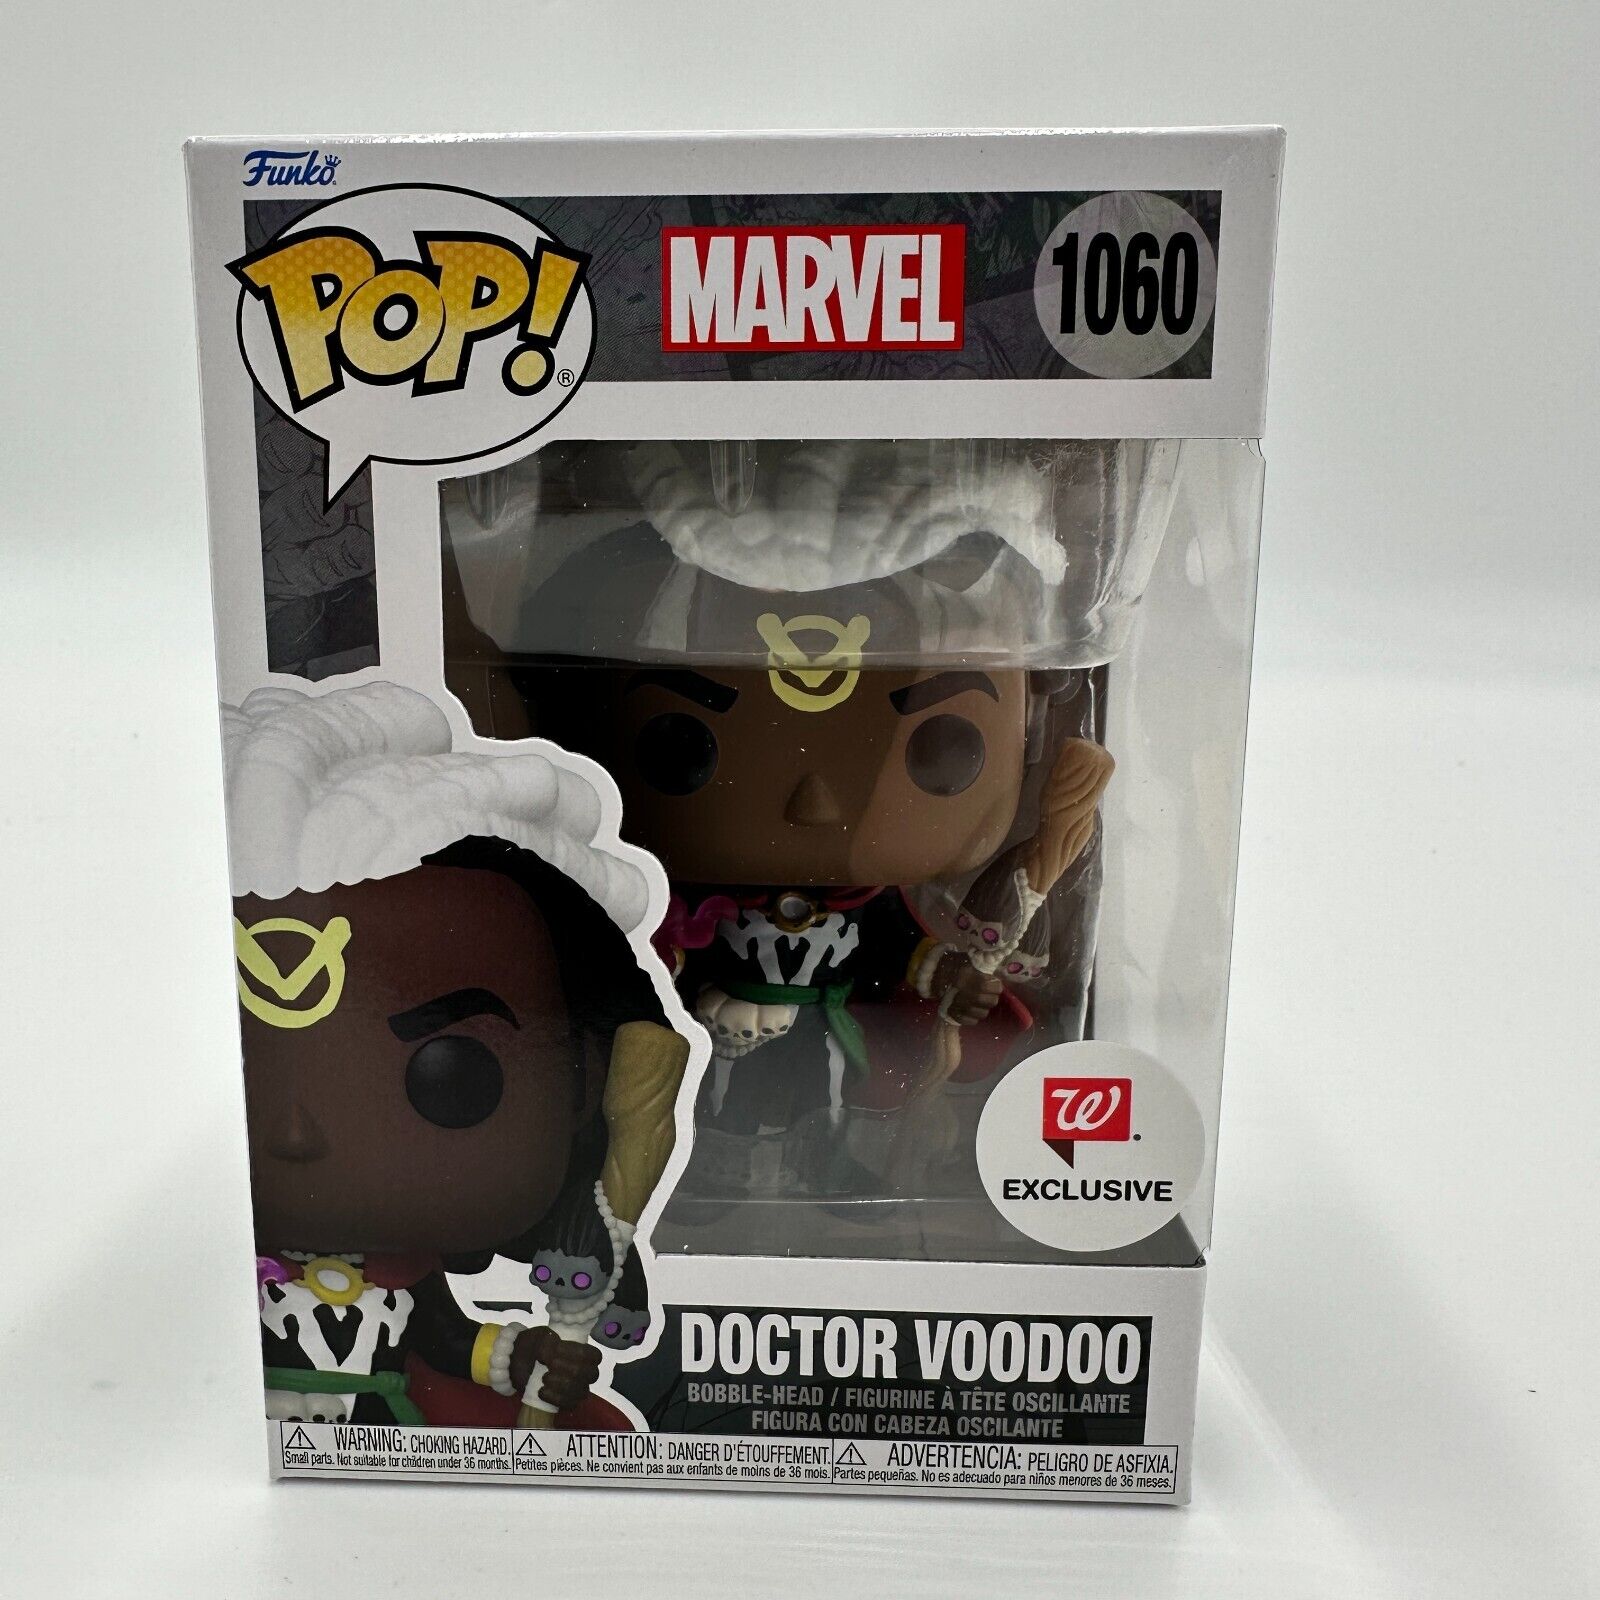 New Funk Pop Marvel Doctor Voodoo #1060 Exclusive-In Stock 